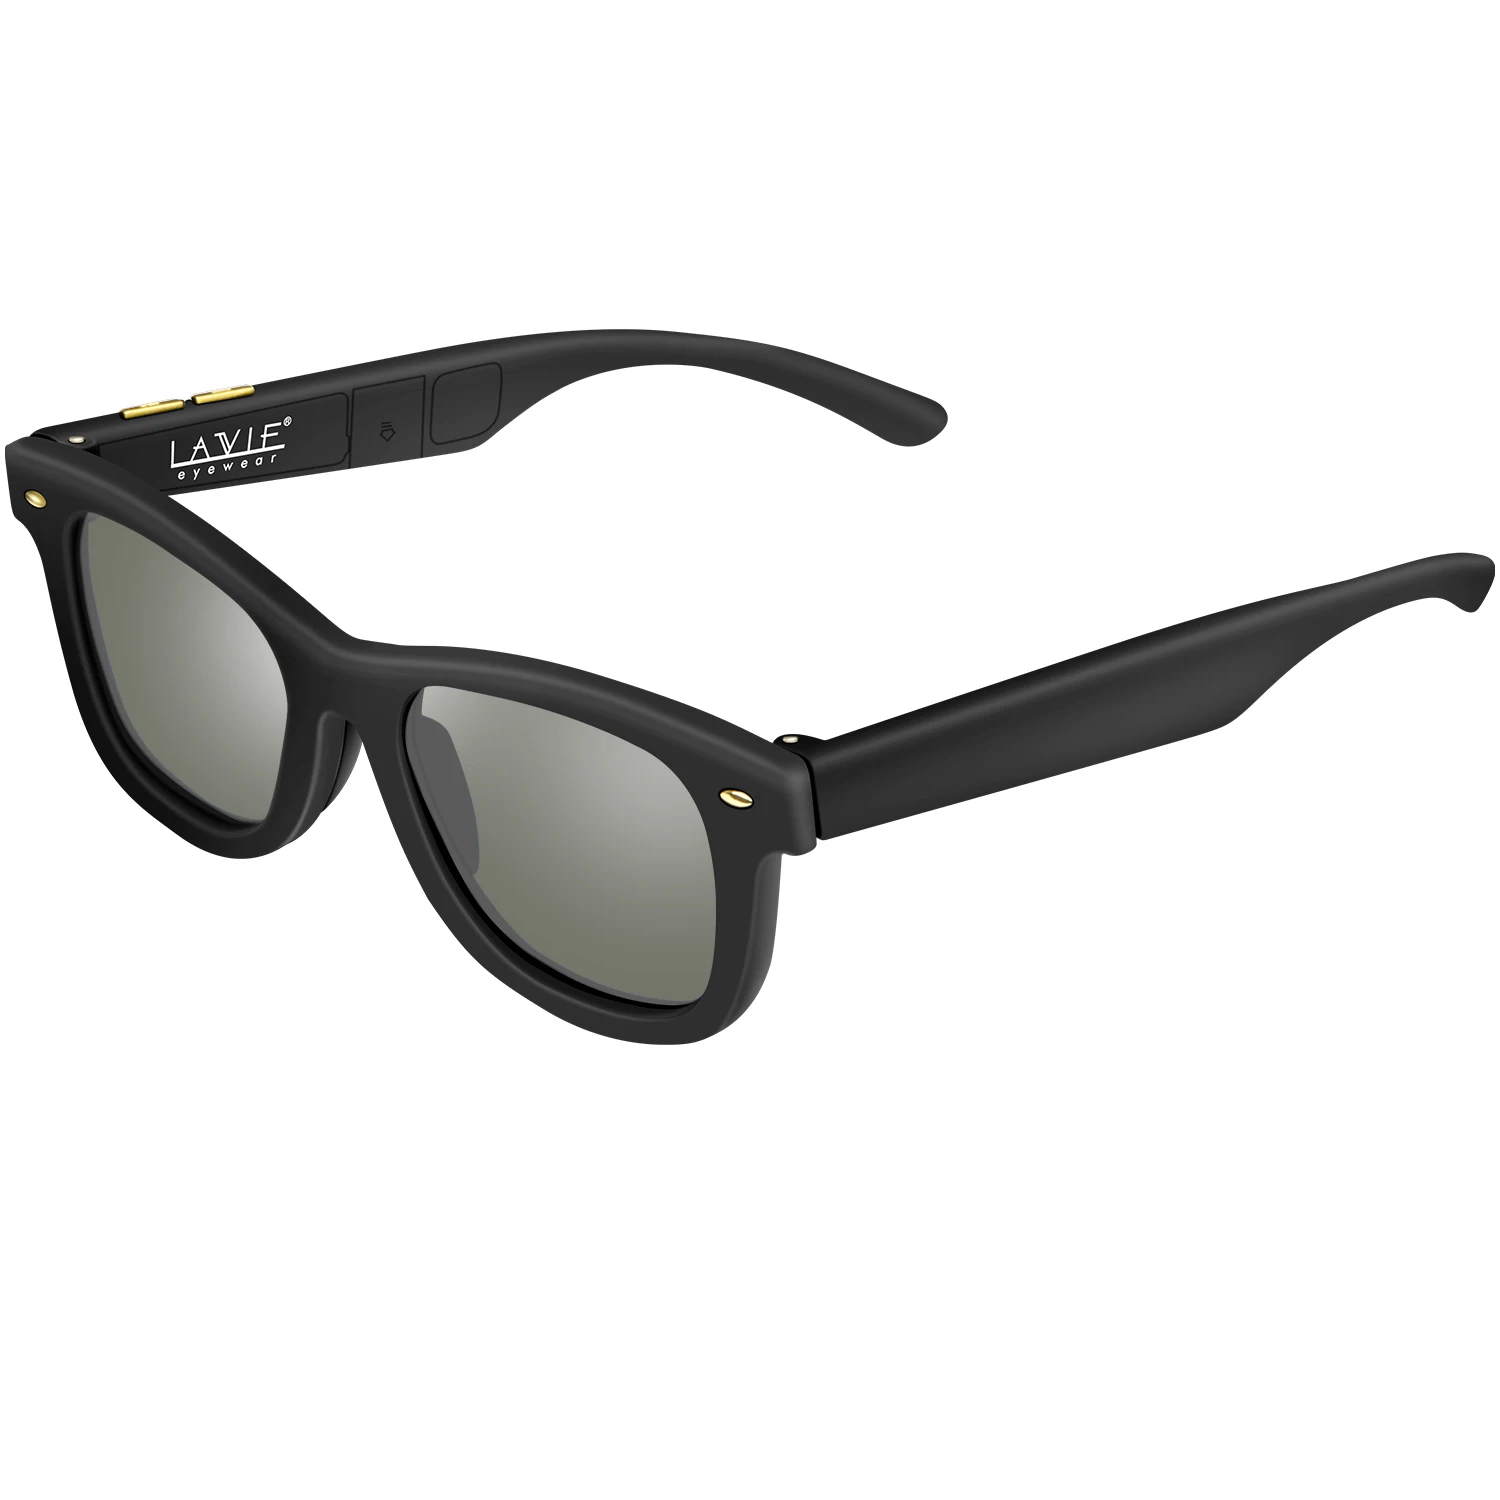 Затемняющие ЖК-солнцезащитные очки новые оригинальные дизайнерские солнцезащитные очки с ЖК-поляризованными линзами электронные регулируемые темные солнцезащитные очки для мужчин